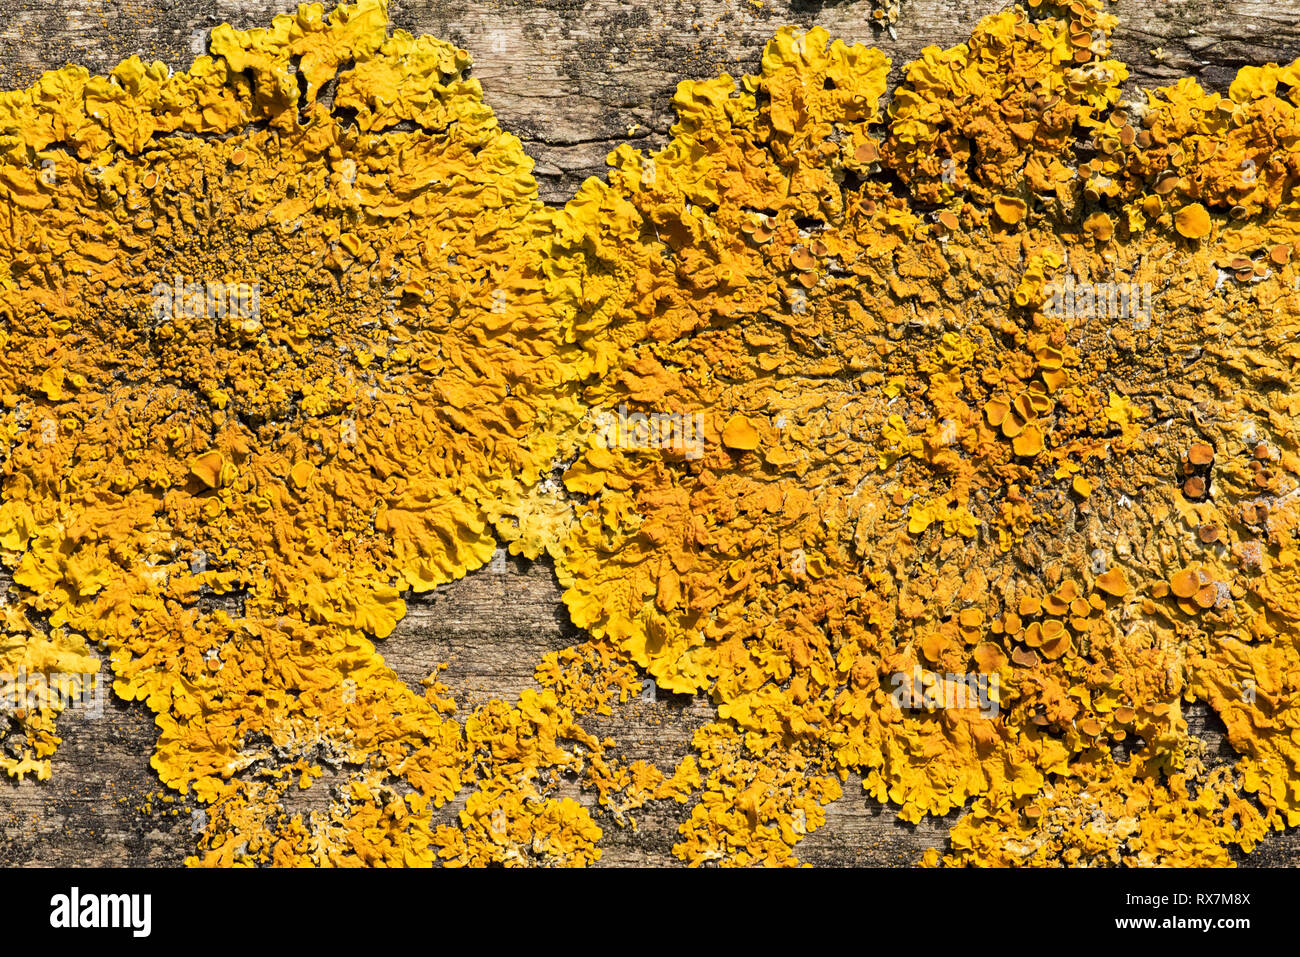 Common Orange Lichen, Maritime sunburst Liched, Xanthoria parietina, Bredhurst Woodlands, Kent UK, high pollution tolerant species, growing on woodlan Stock Photo